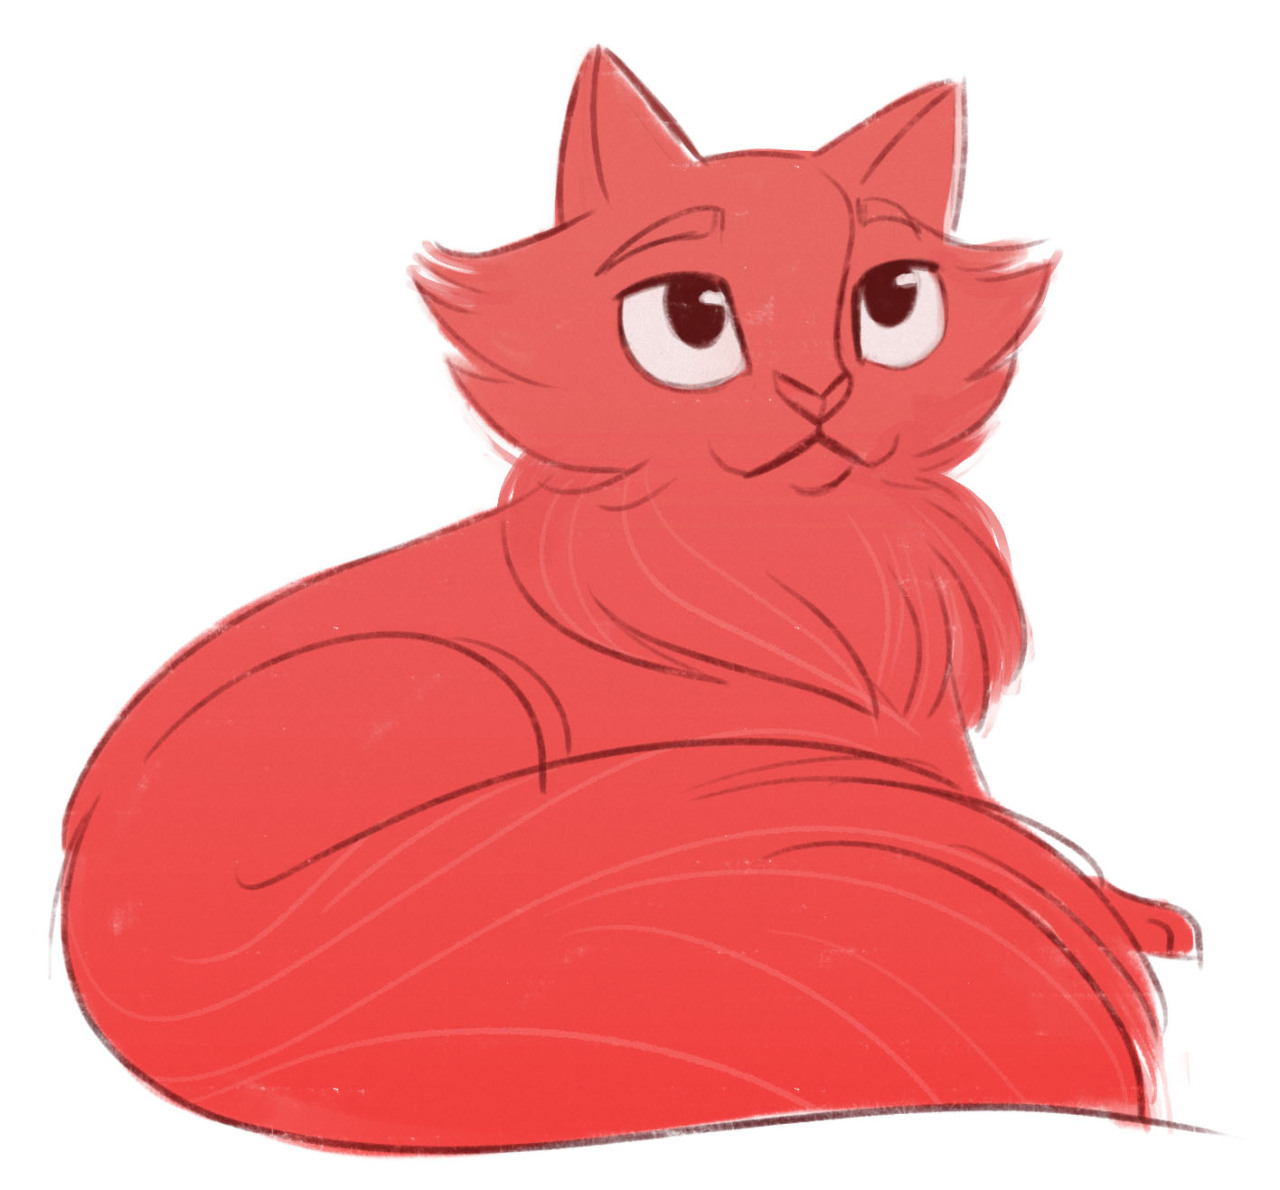 Red cat папа. Ред Кэт ред Кэт. Красный котик. Мультяшный кот. Красный мультяшный кот.